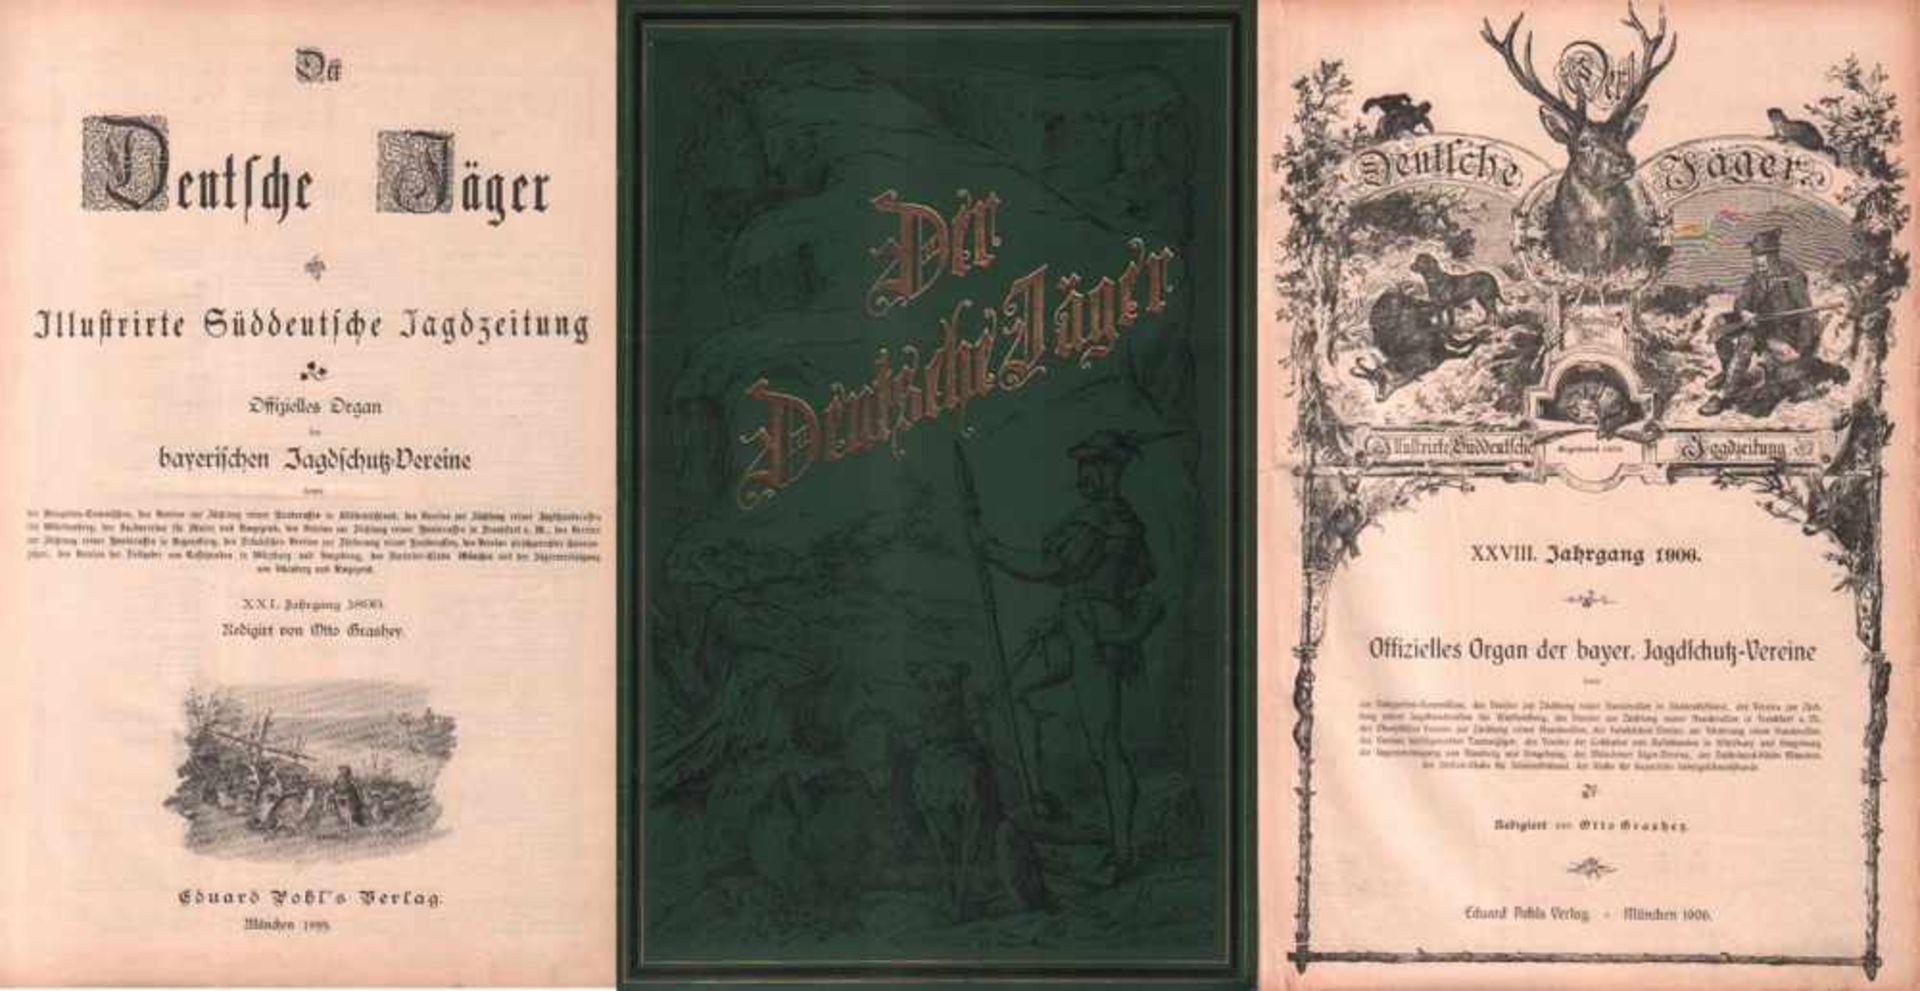 Der Deutsche Jäger.Illustrierte Süddeutsche Jagdzeitung. Offizielles Organ der bayerischen